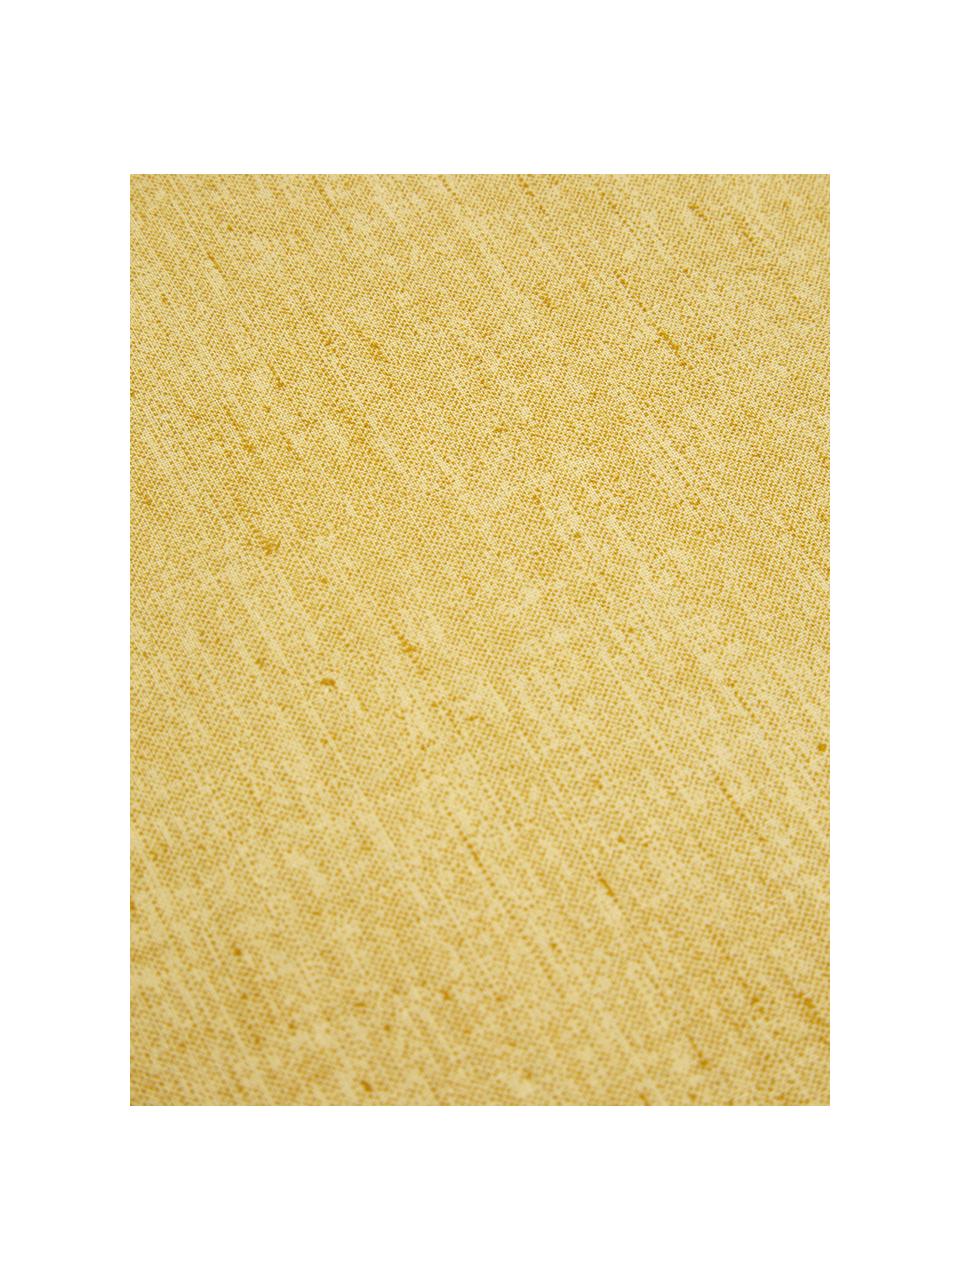 Pościel z bawełny organicznej Raja, Bawełna, Brunatnożółty, 135 x 200 cm